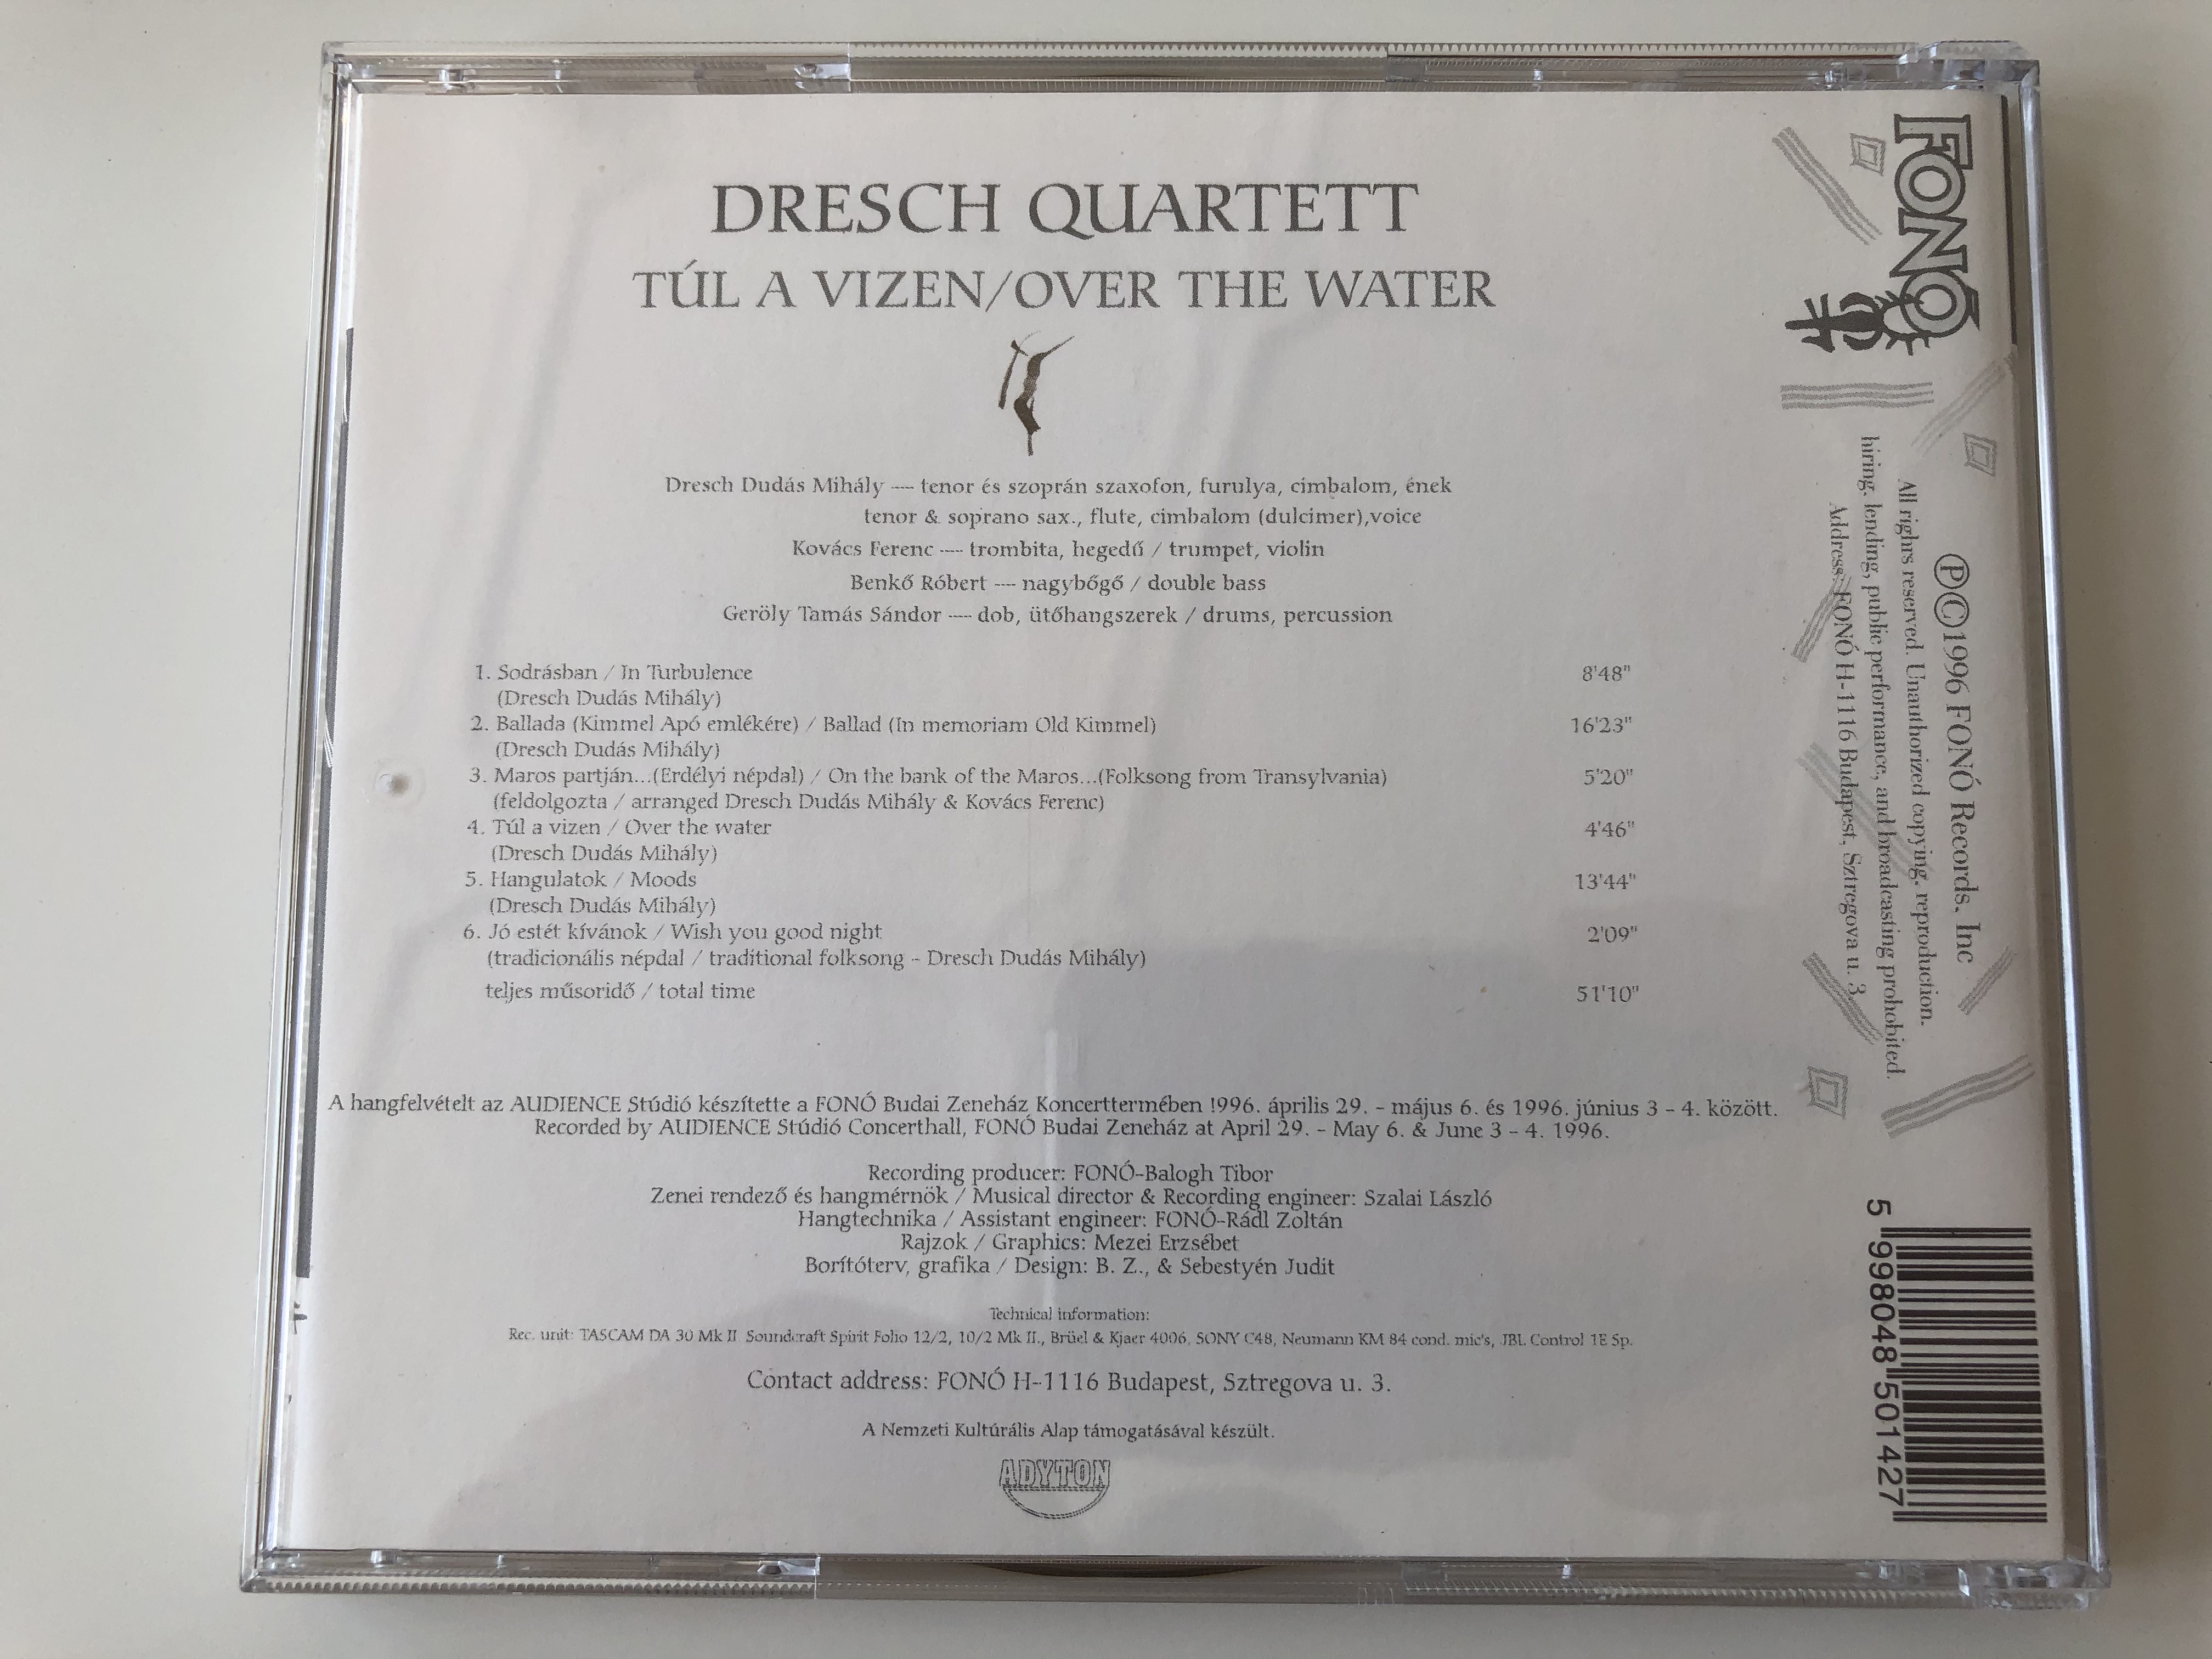 t-l-a-vizen-dresch-quartett-fon-records-audio-cd-1996-fa-013-2-5-.jpg